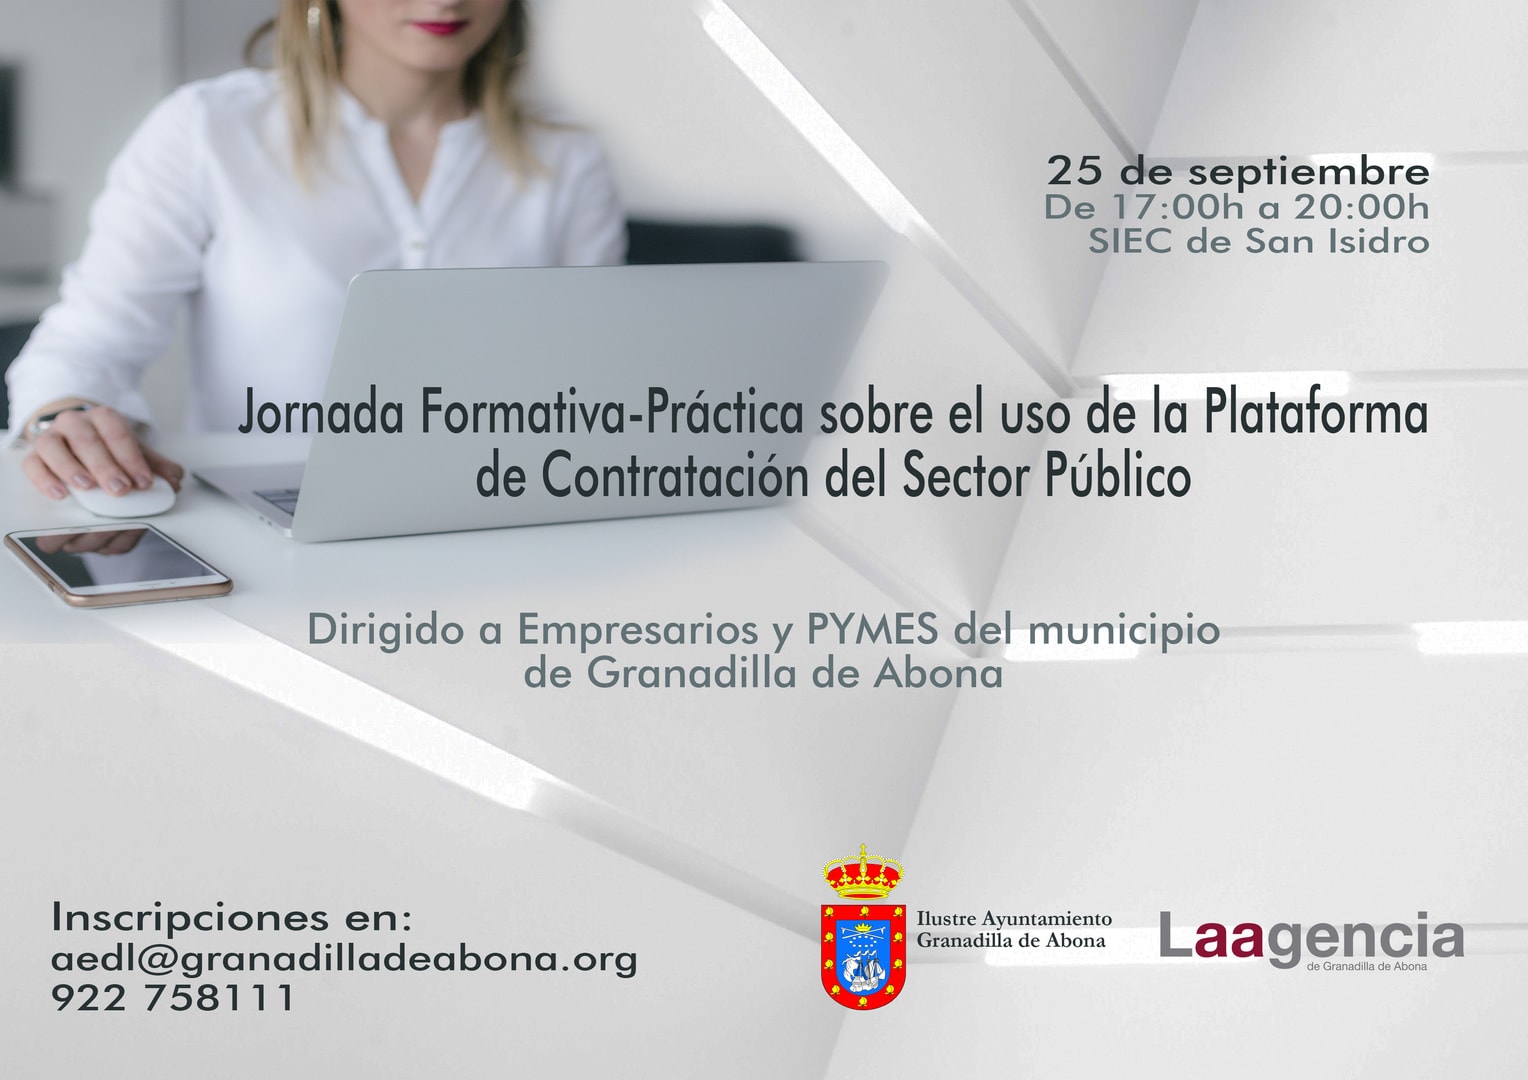 La jornada formativa teórico-práctica para PYMES y entidades privadas sobre el ‘Uso de la Plataforma de Contratación del Sector Público’, este miércoles en San Isidro